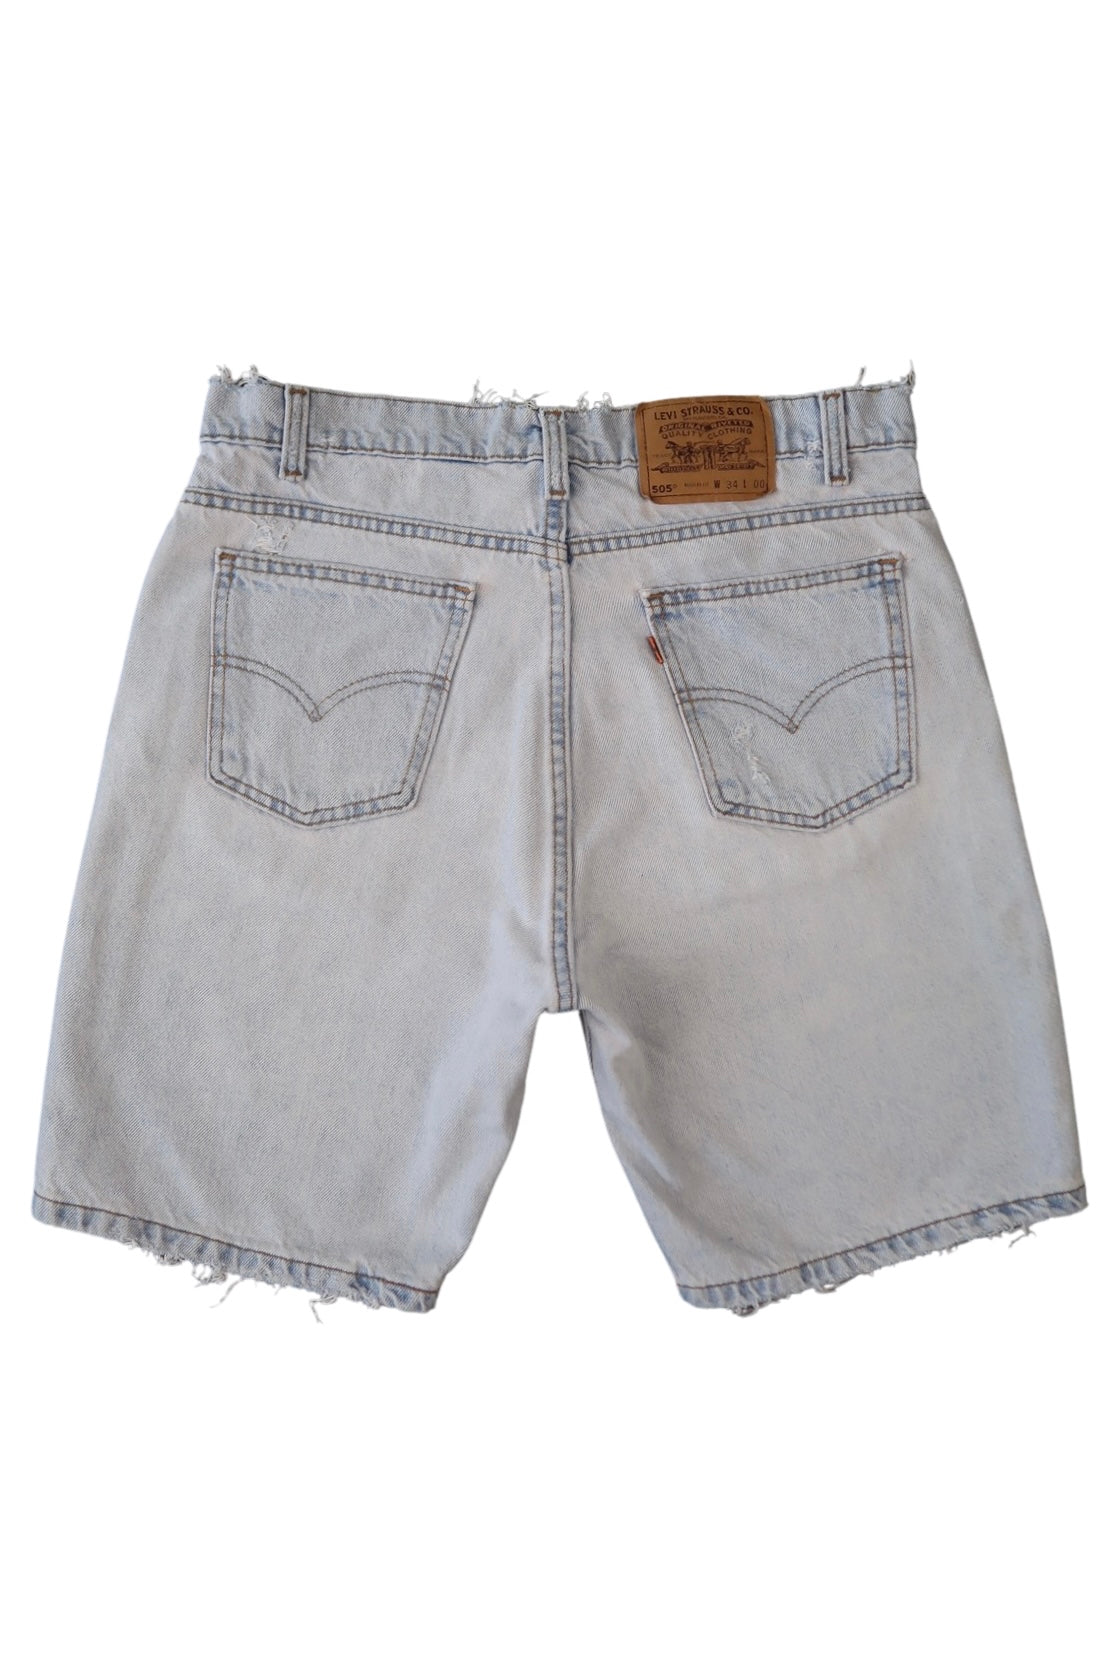 Vintage Levi’s Shorts